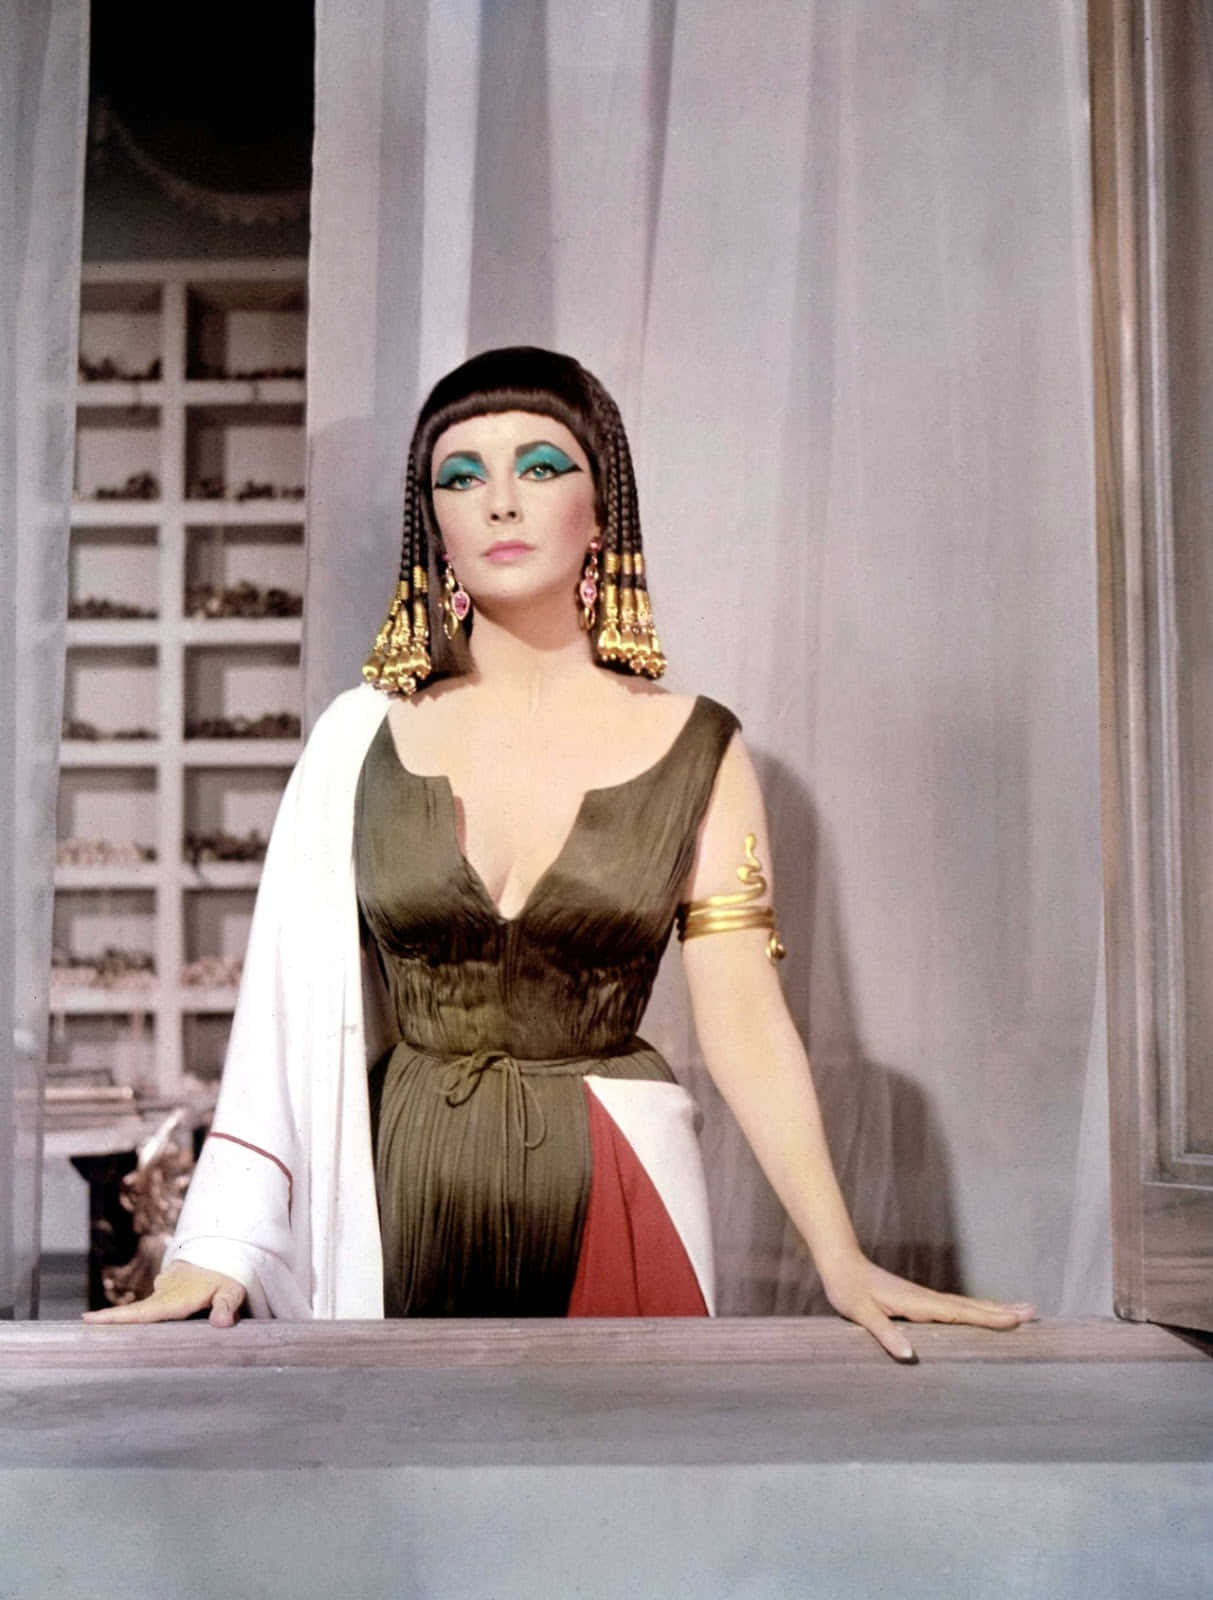 Cleopatra, the Last Pharaoh of Egypt